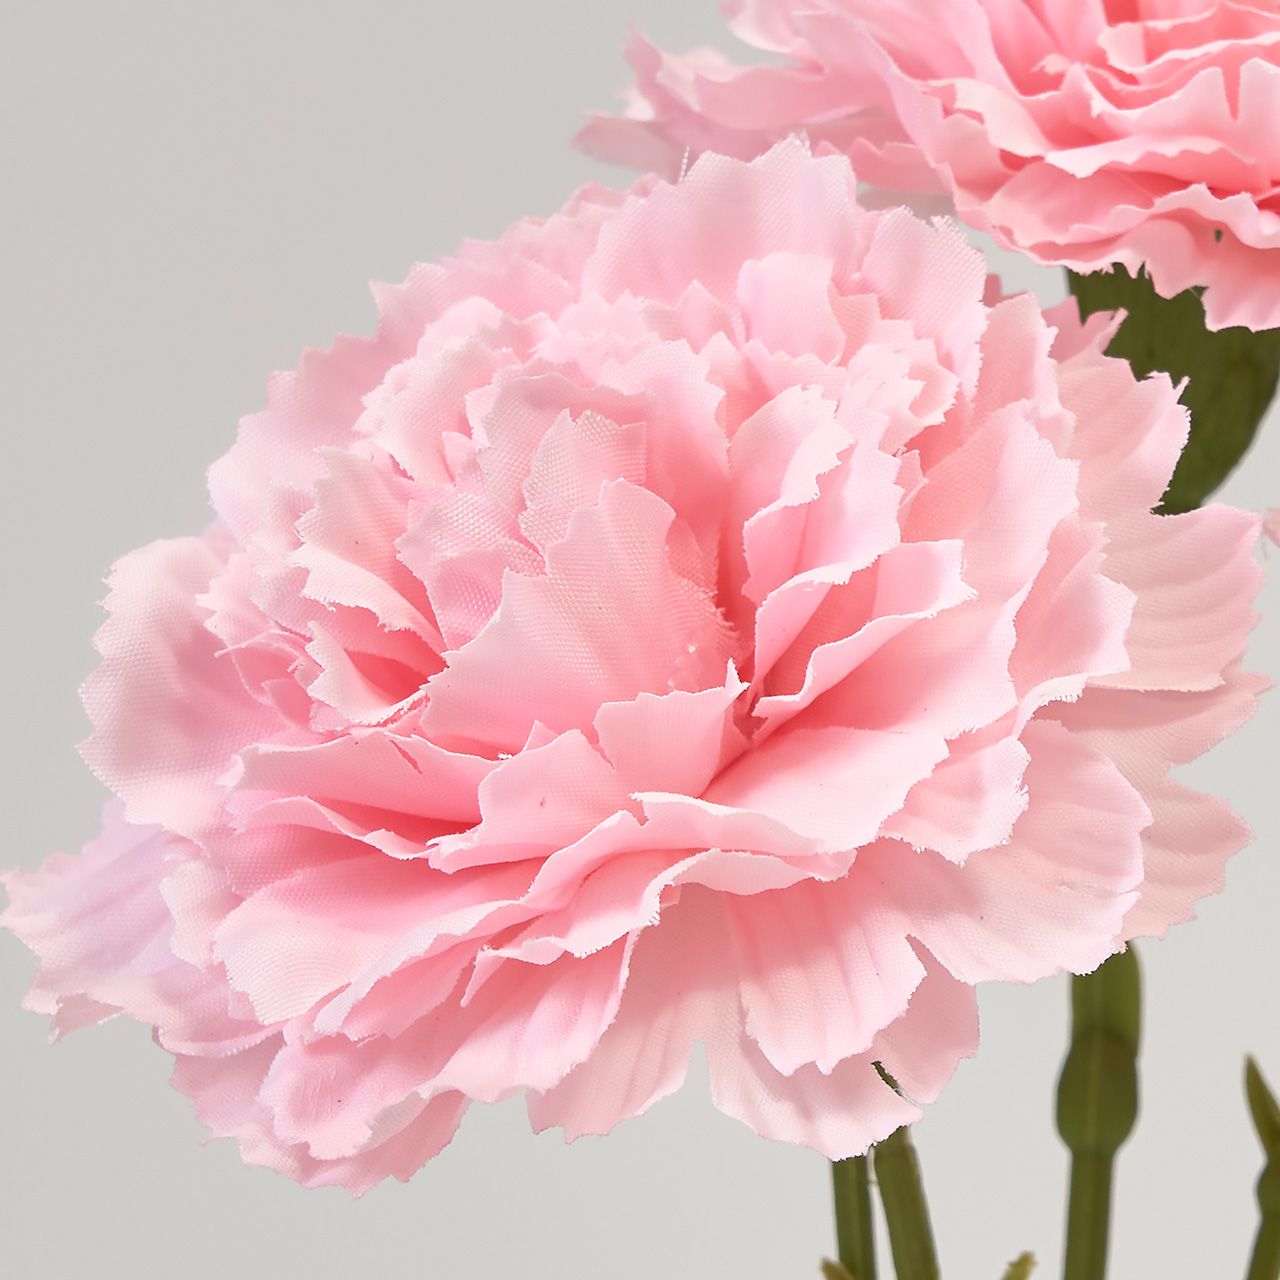 MAGIQ　ルイカーネーションピック　ピンク　アーティフィシャルフラワー　造花　FM002568-002　カーネーション　母の日